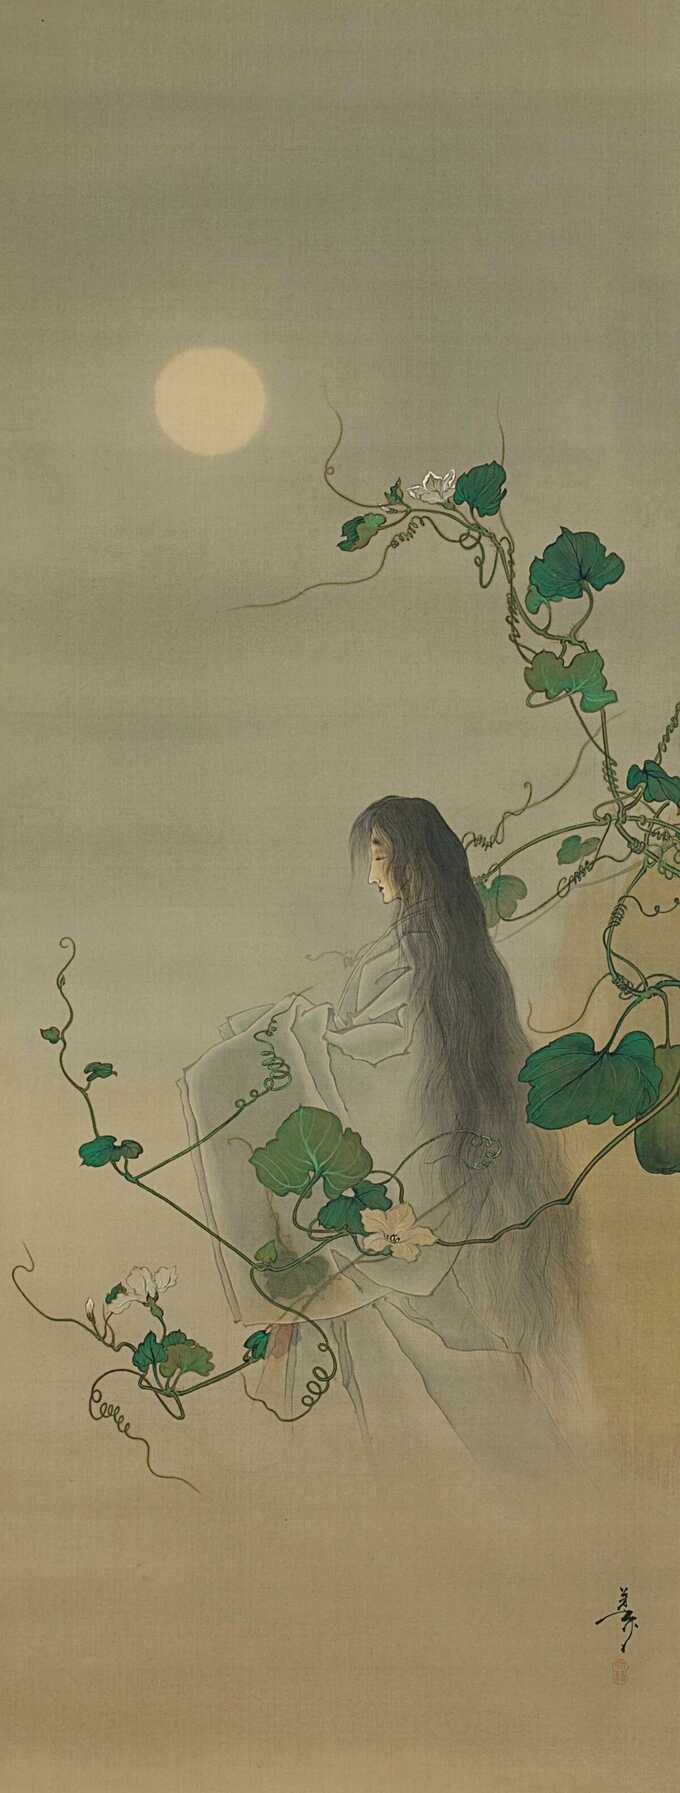 Tsukioka Yoshitoshi : L'esprit du défunt Yūgao enlacé dans des vignes de fleur de lune, d'après l'estampe « La dame aux visages du soir » de la série Cent aspects de la lune (Tsuki hyakushi : Genji Yūgao no maki)